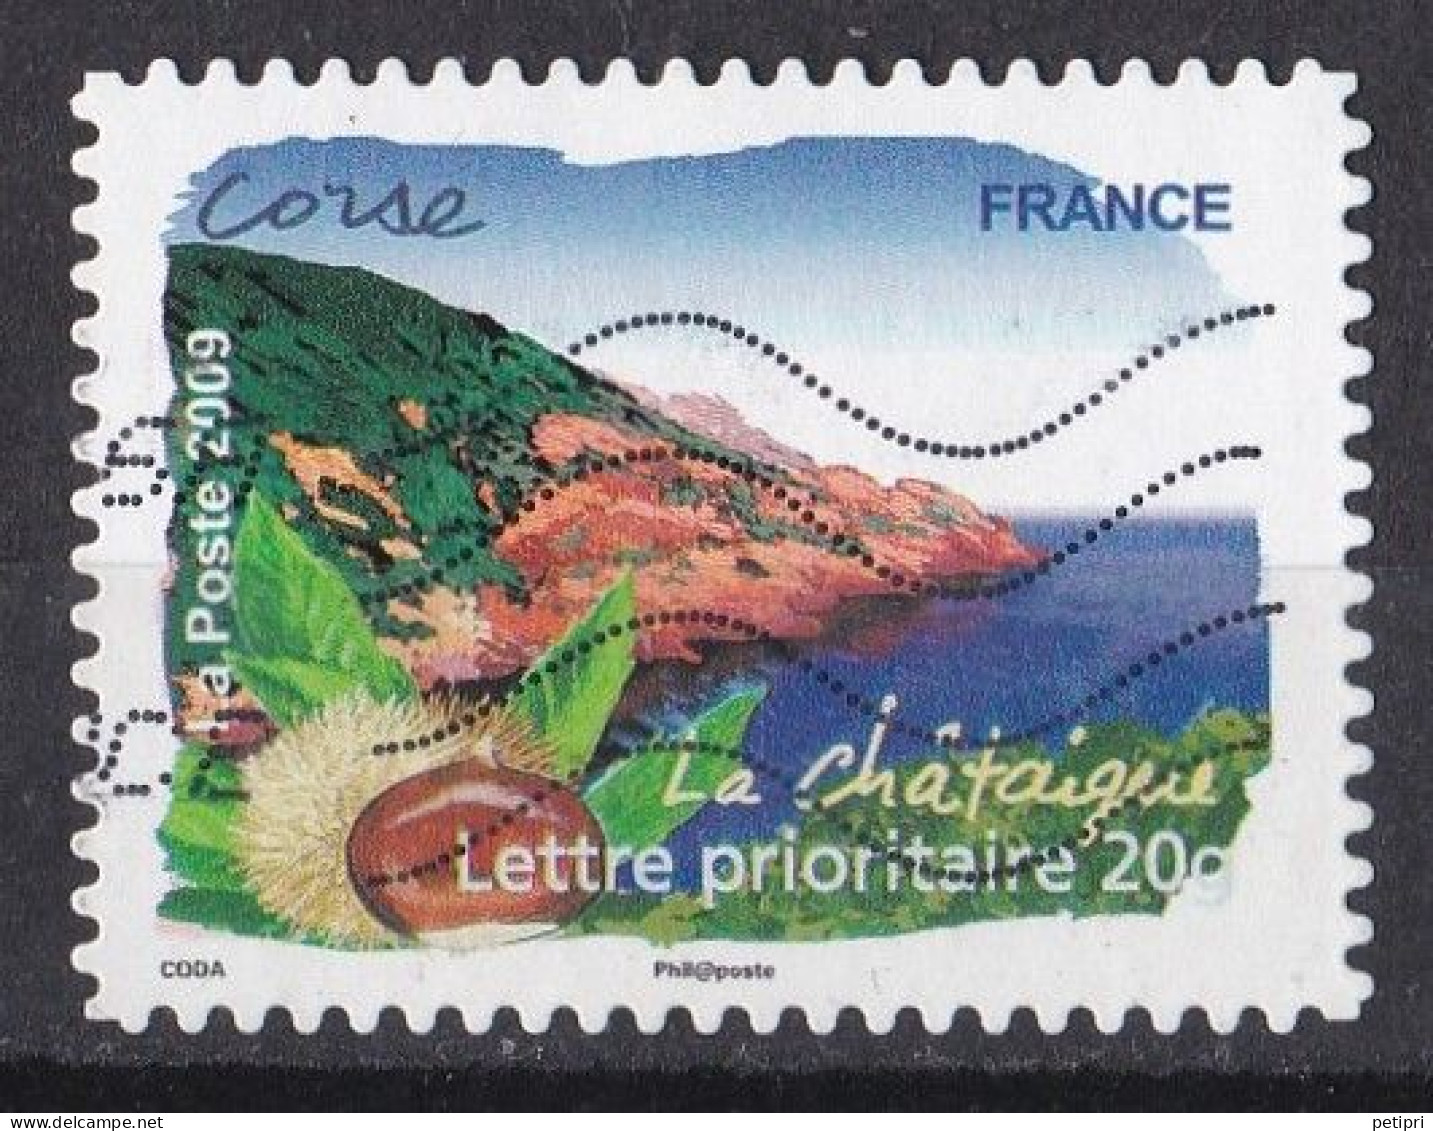 France -  Adhésifs  (autocollants )  Y&T N ° Aa   304  Oblitéré - Used Stamps